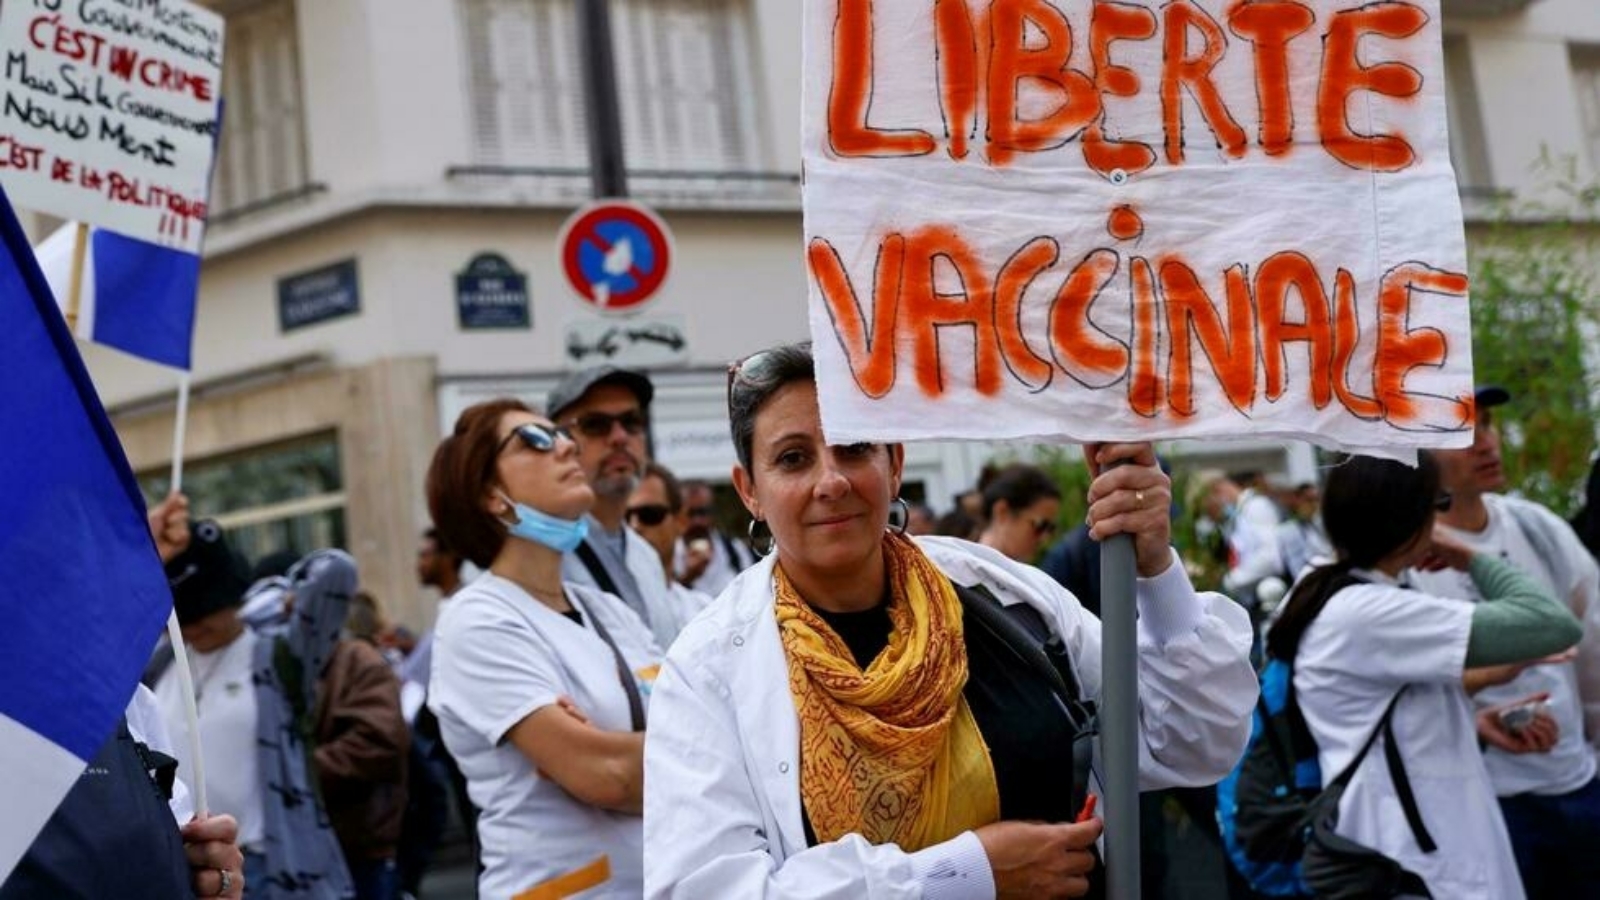 عمّال في قطاع الصحة يرفعون لافتات معارضة لفرض التلقيح في تظاهرة نقابية أمام وزارة الصحة في باريس. بتاريخ 14 أيلول/ سبتمبر 2021.